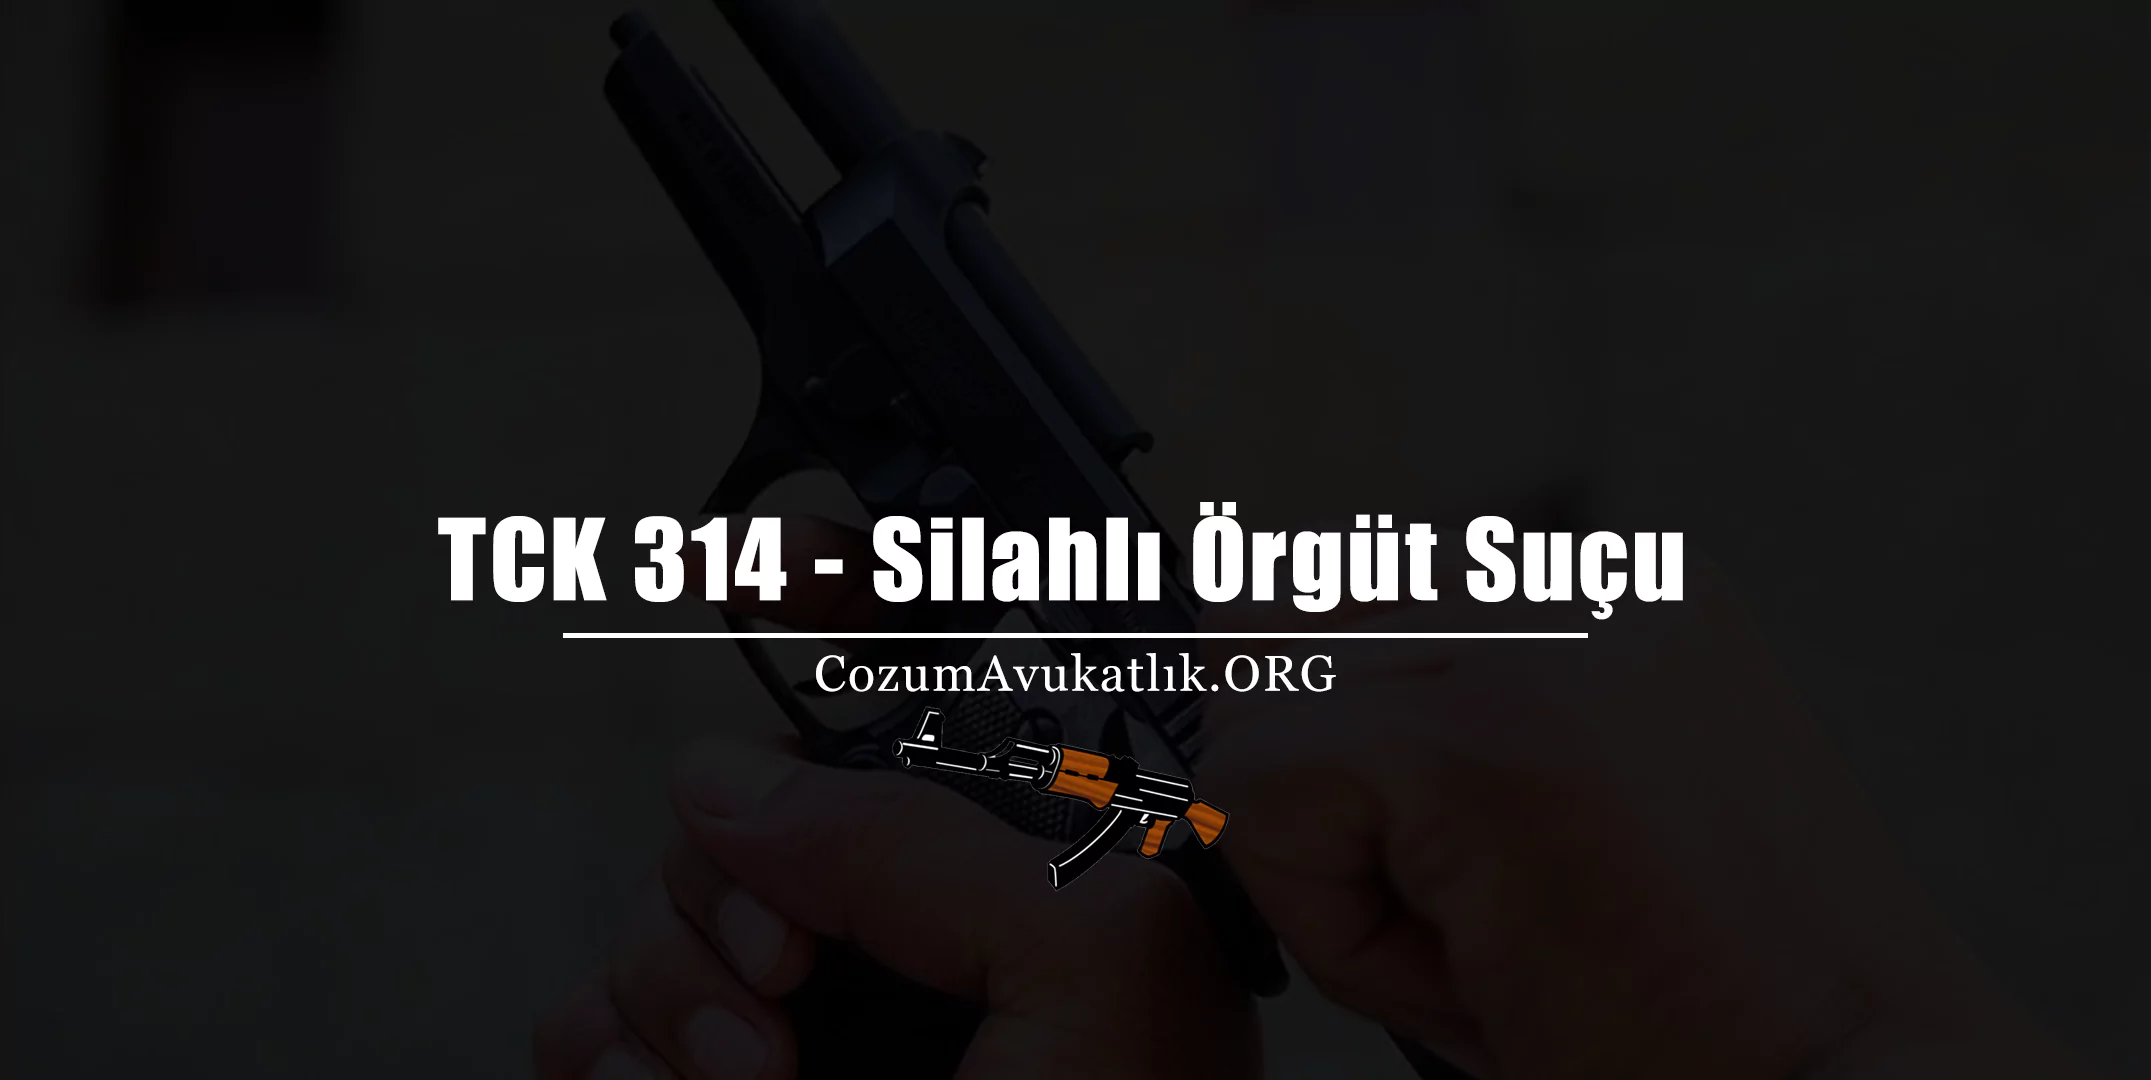 TCK 314 - Silahlı Örgüt Suçu